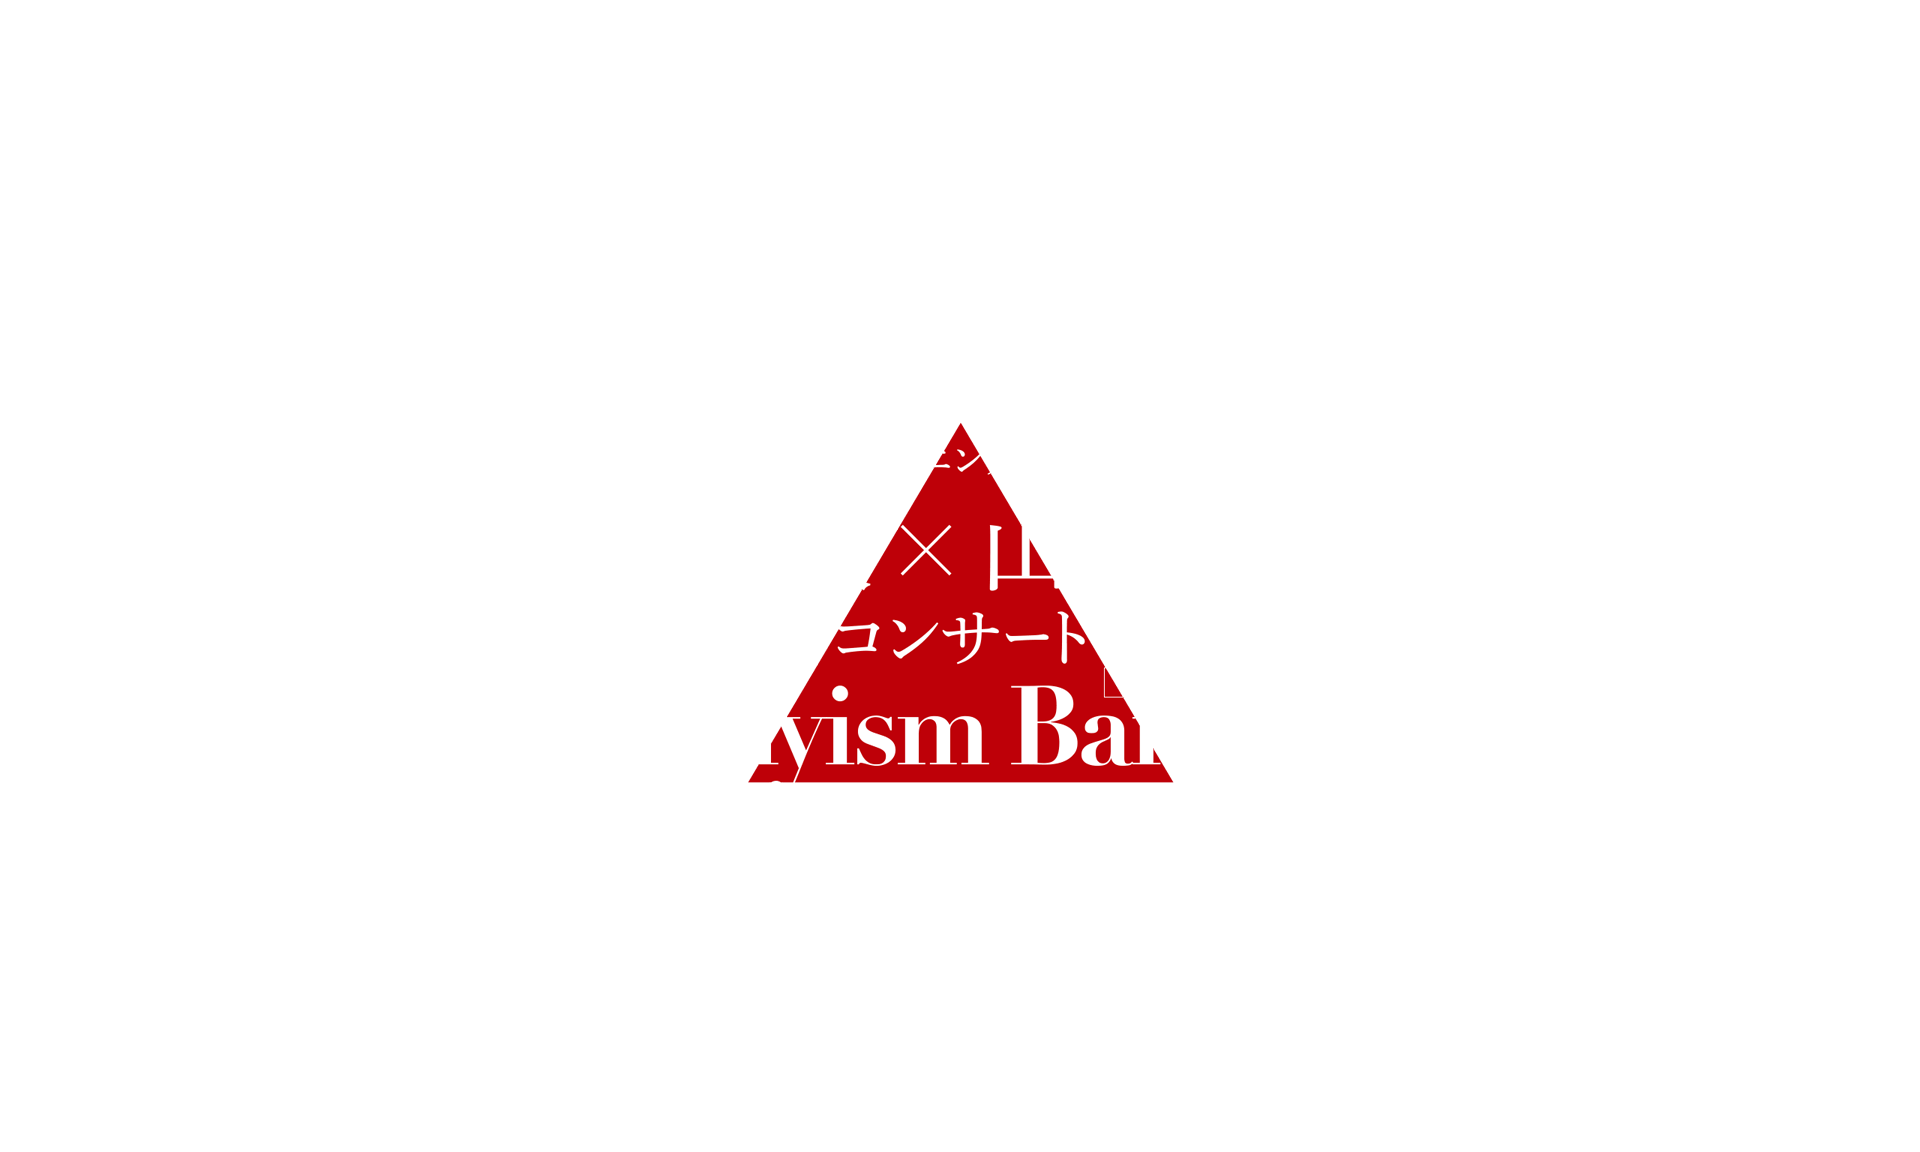 粋な男たちの、音楽と言葉の新感覚エンターテインメント ステージ 古澤 巖×山本耕史コンサート Dandyism Banquet tour 2022